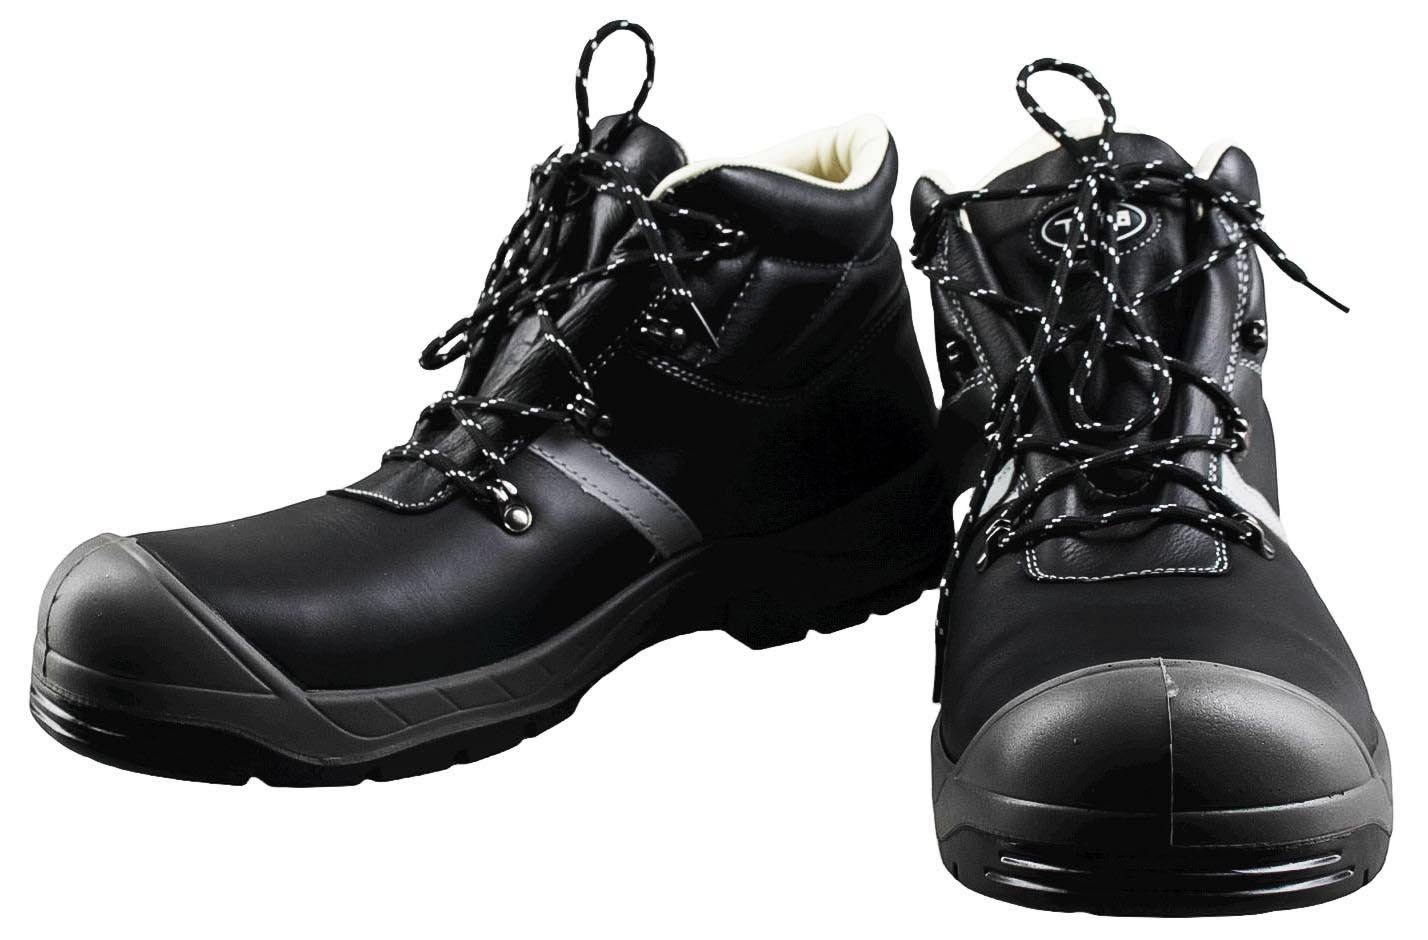 Triuso »Triuso Bari248 S3 Herren Schuhe Sicherheitsstiefel« Arbeitsschuh  online kaufen | OTTO